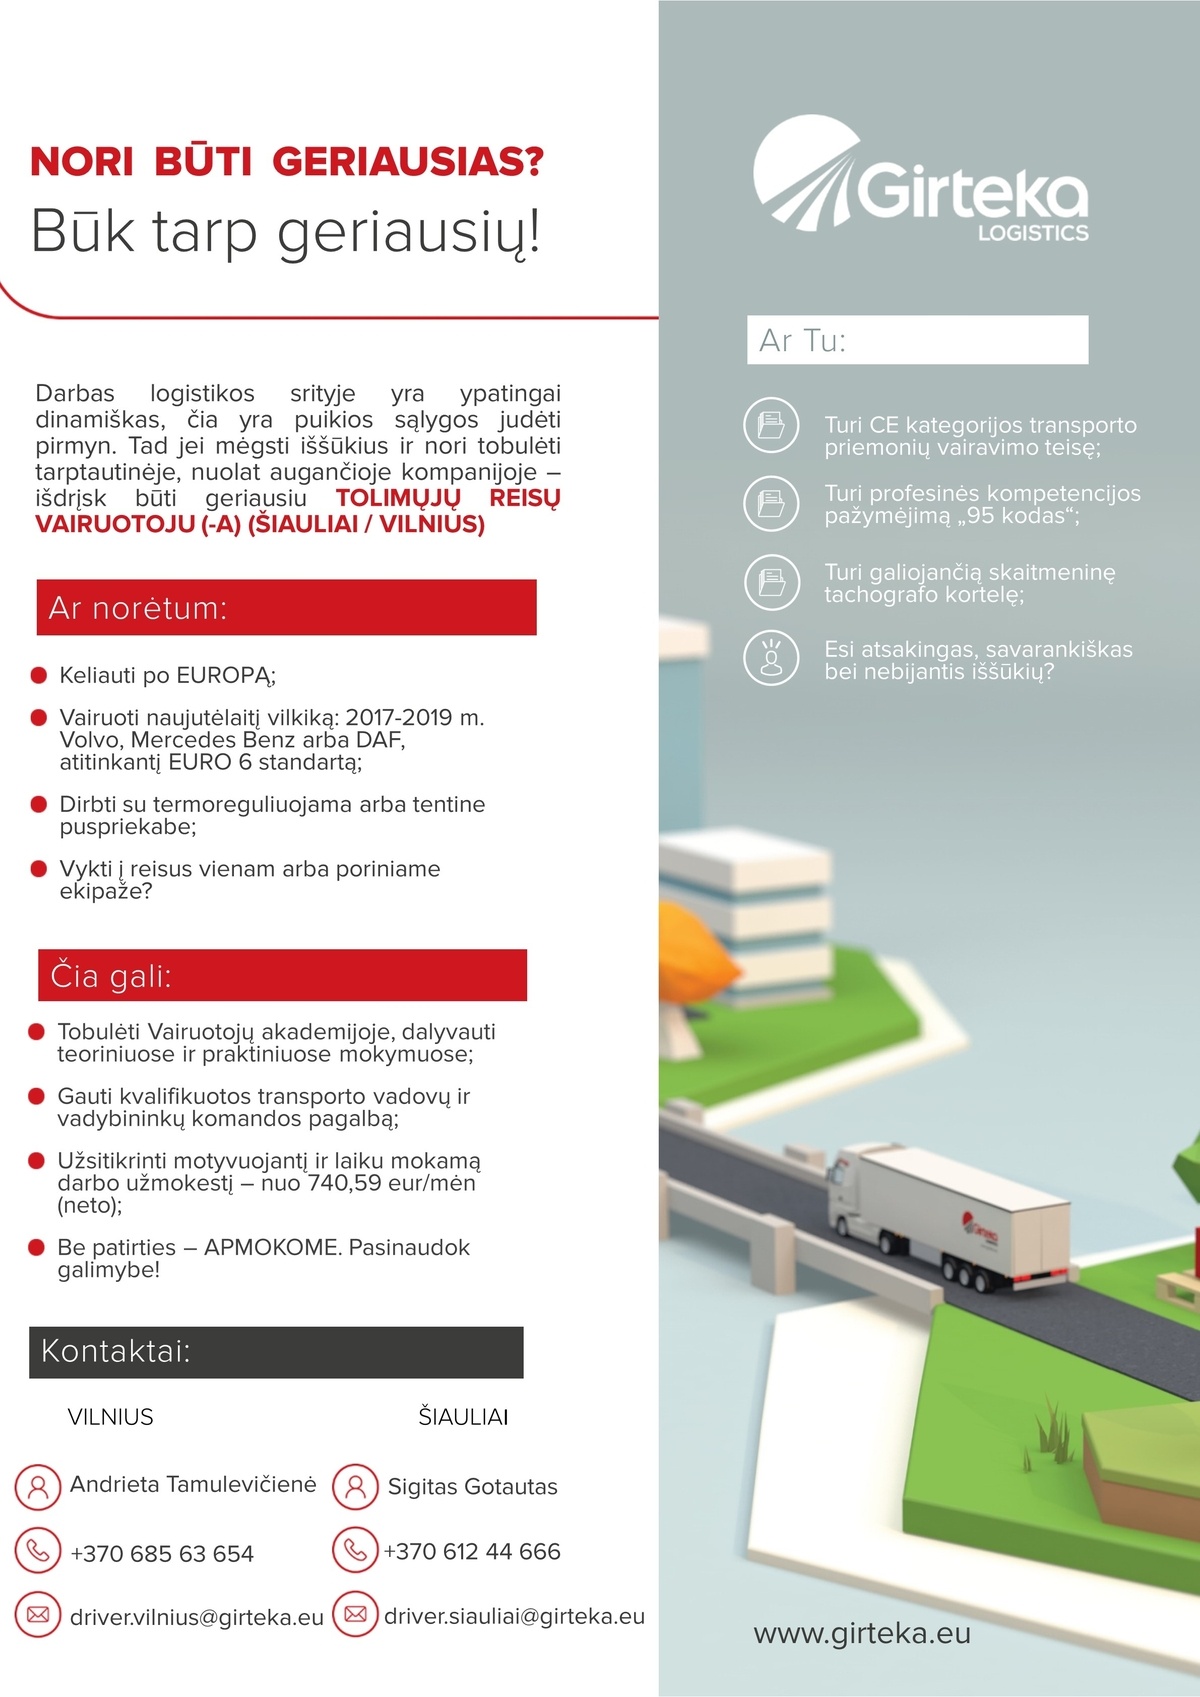 Girteka logistics, UAB Tolimųjų reisų vairuotojas (-a) darbui Europoje